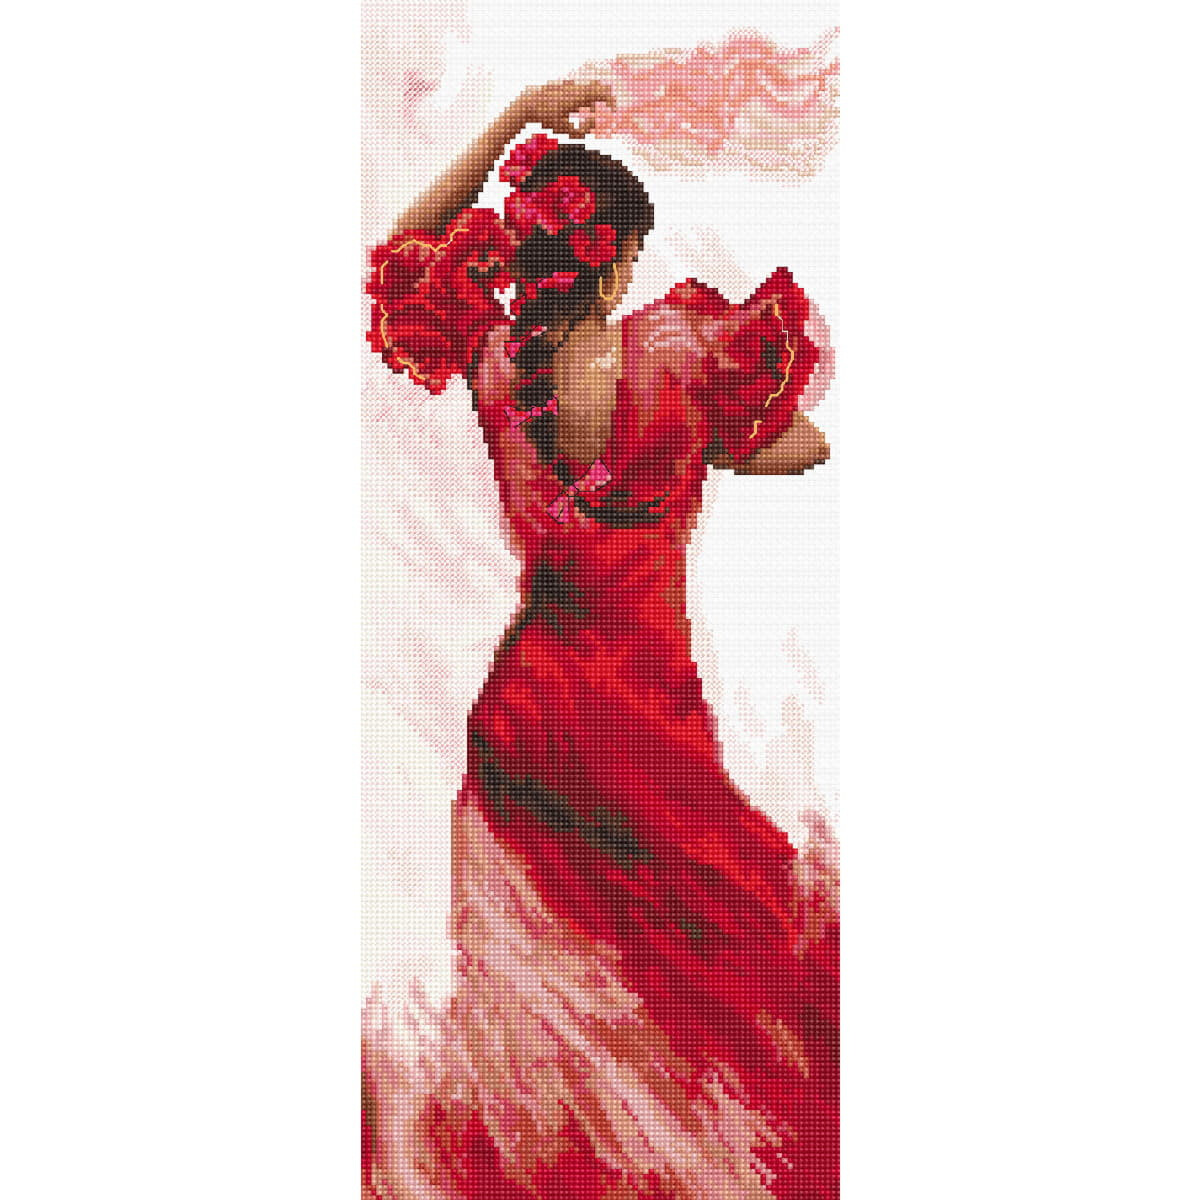 Een achteraanzicht van een flamencodanseres in een rode...